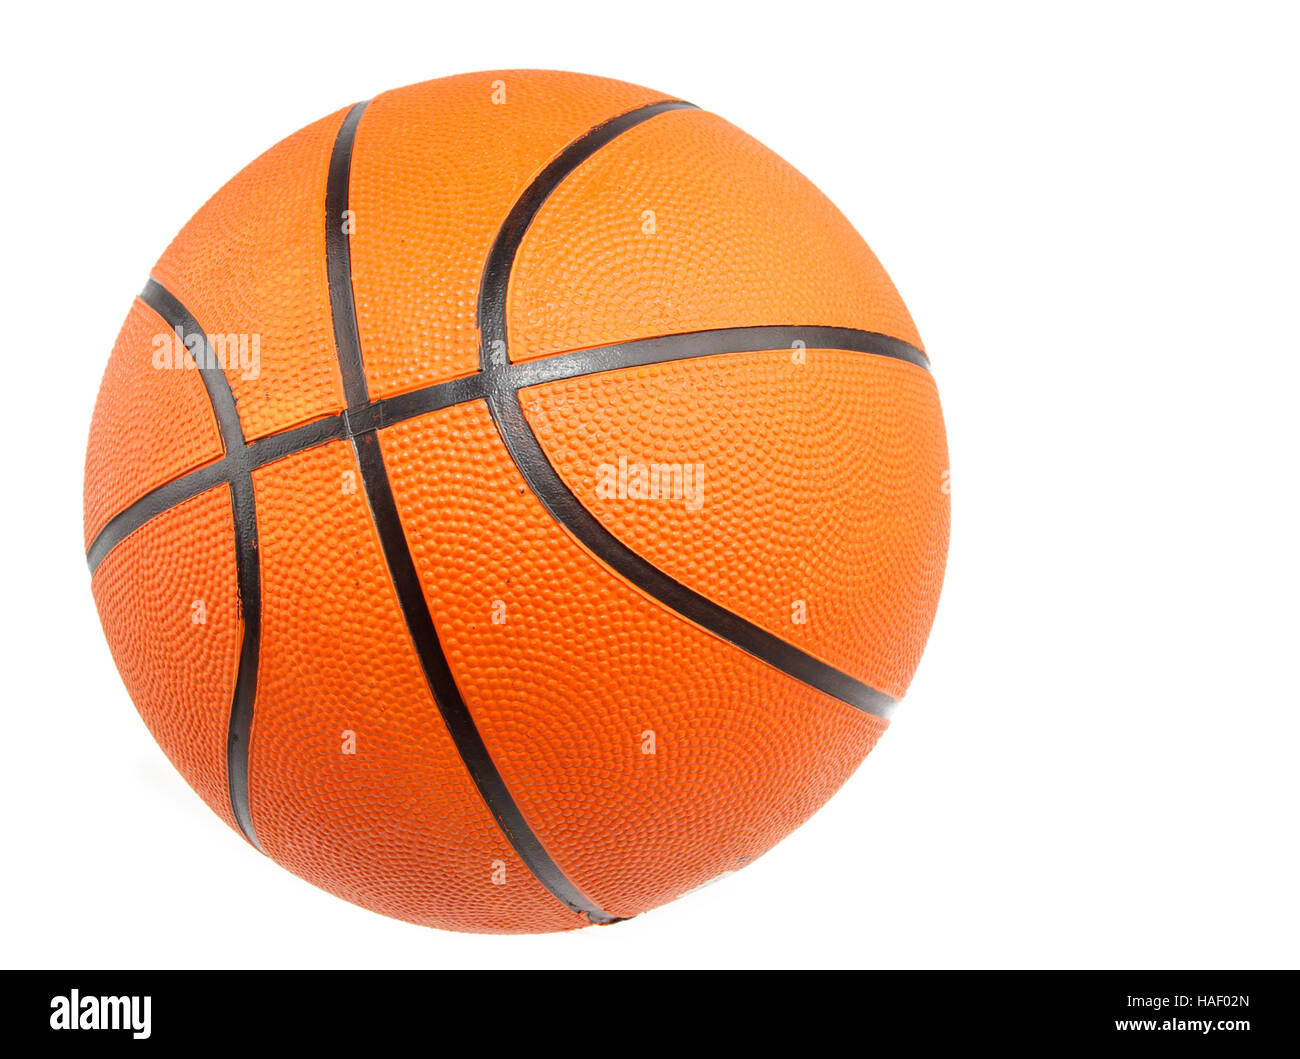 One basketball on plain background Stock Photo